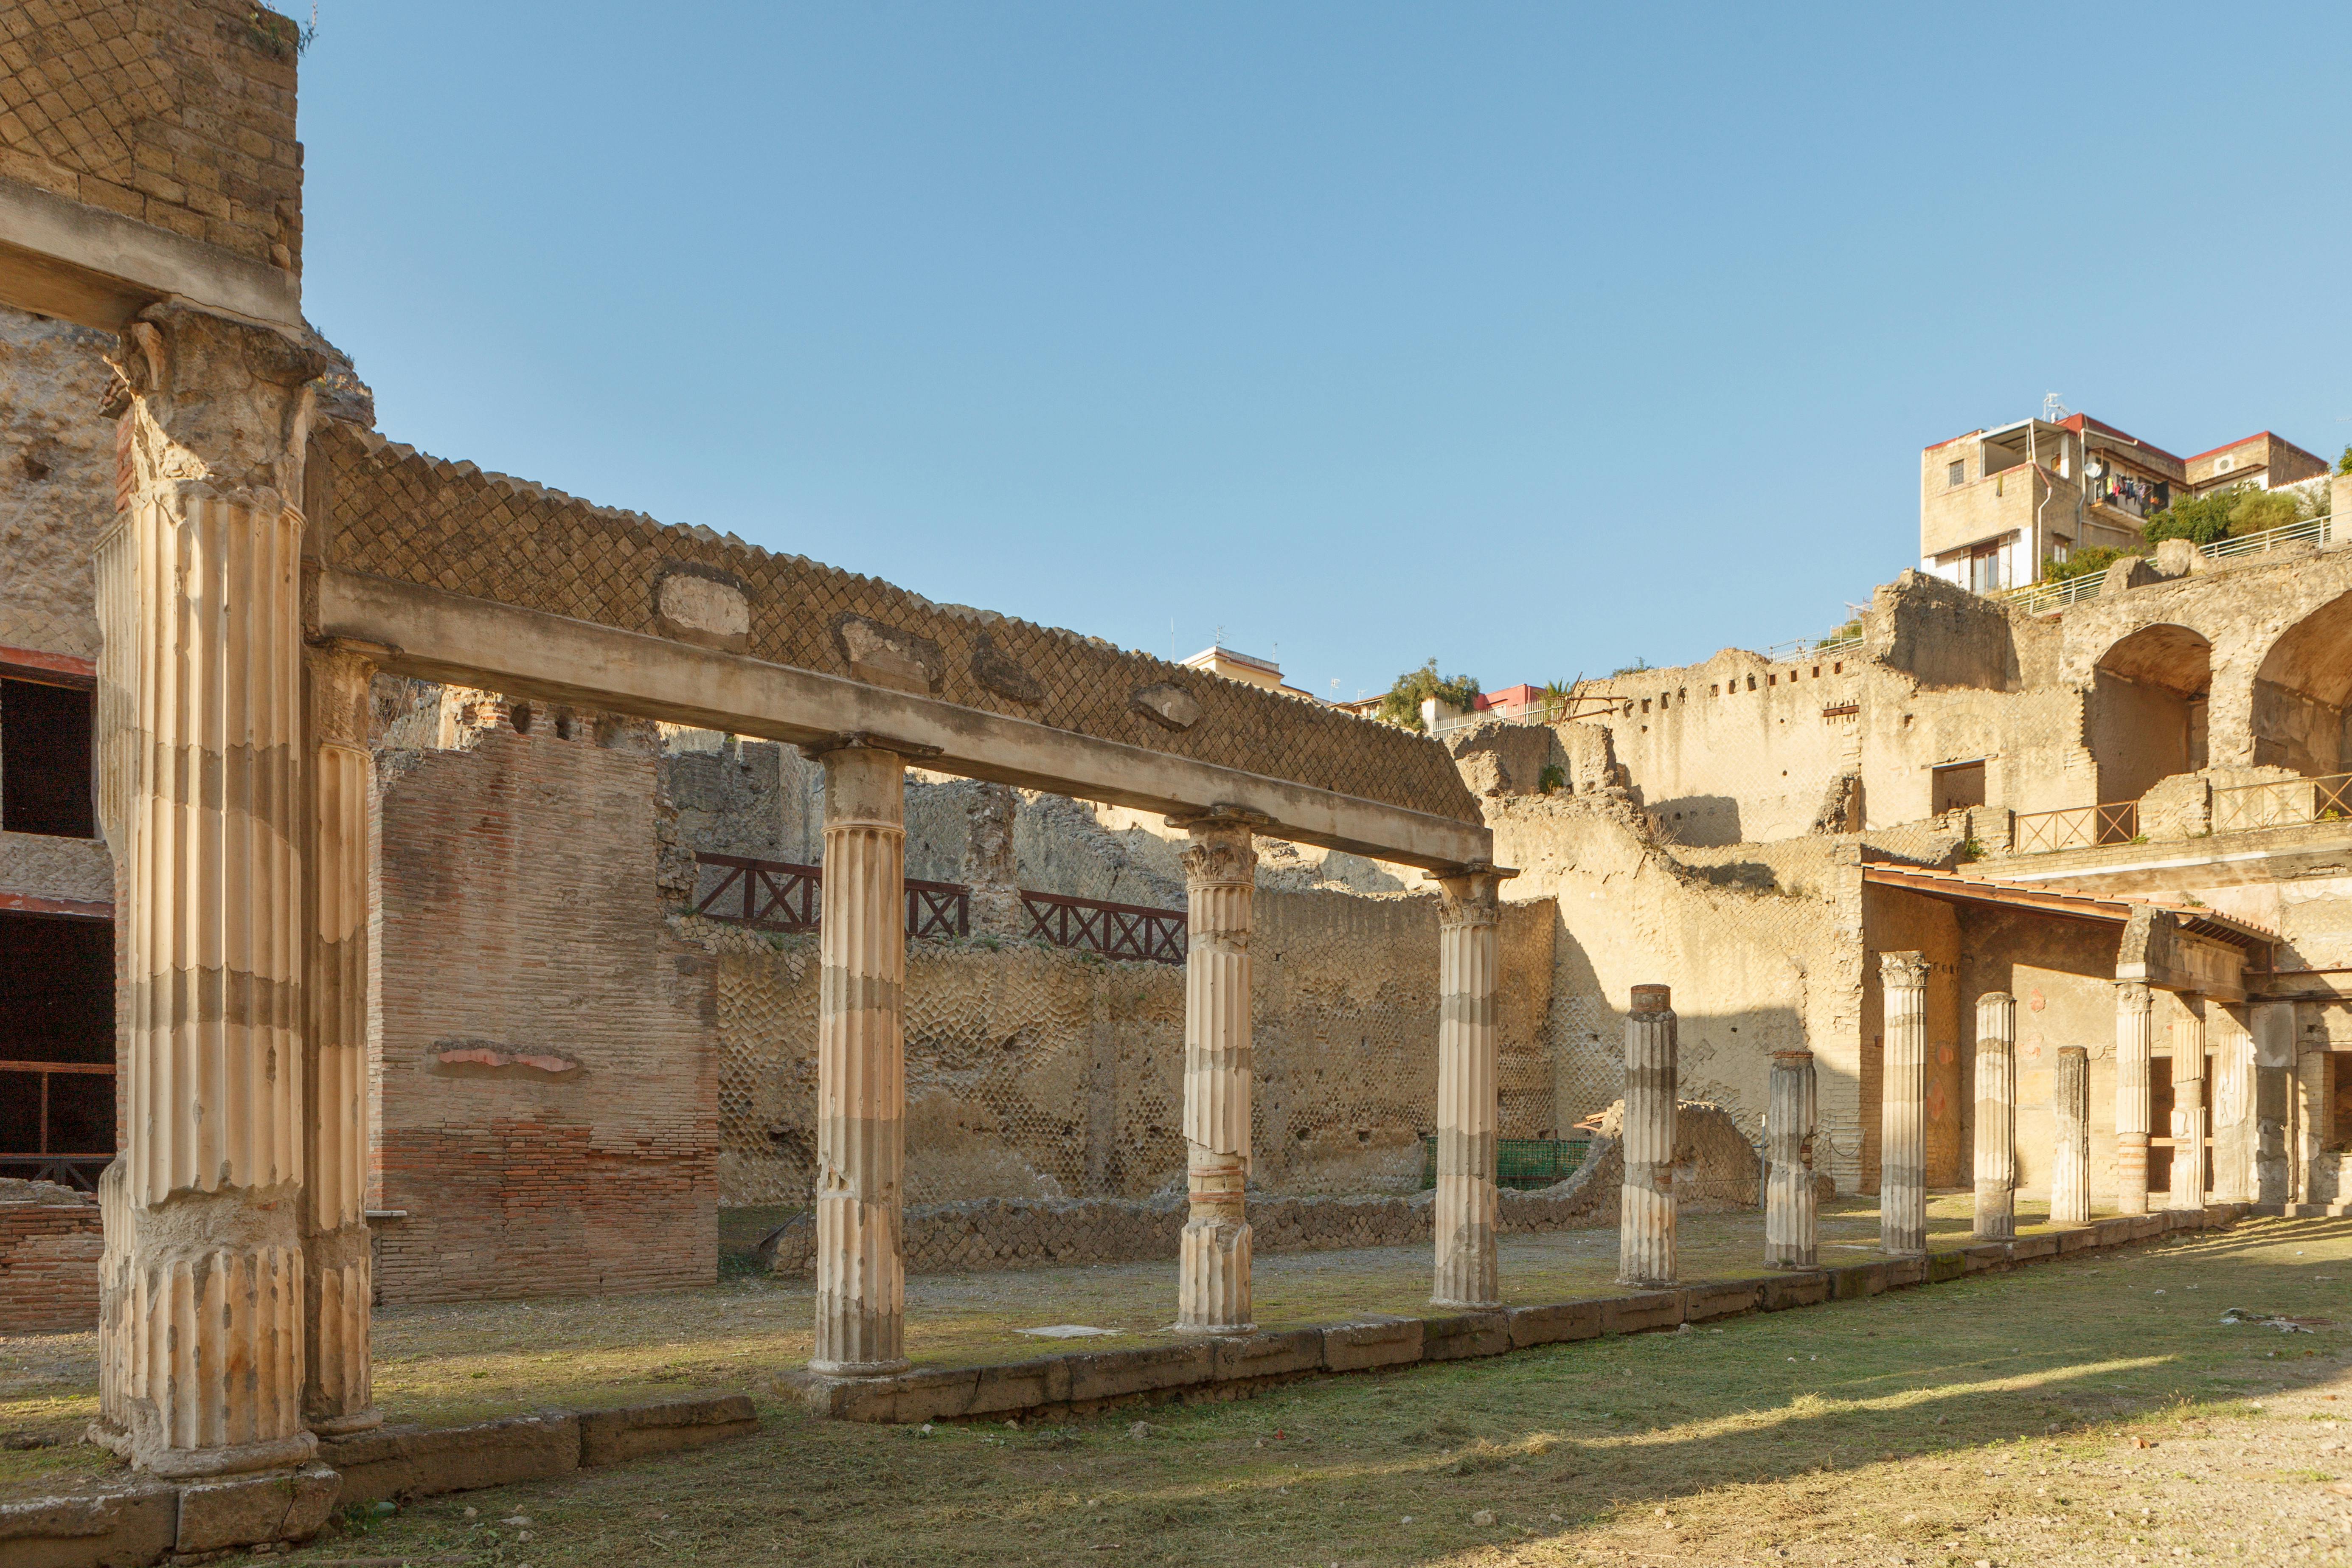 Kleingruppentour durch Herculaneum mit einem Archäologen